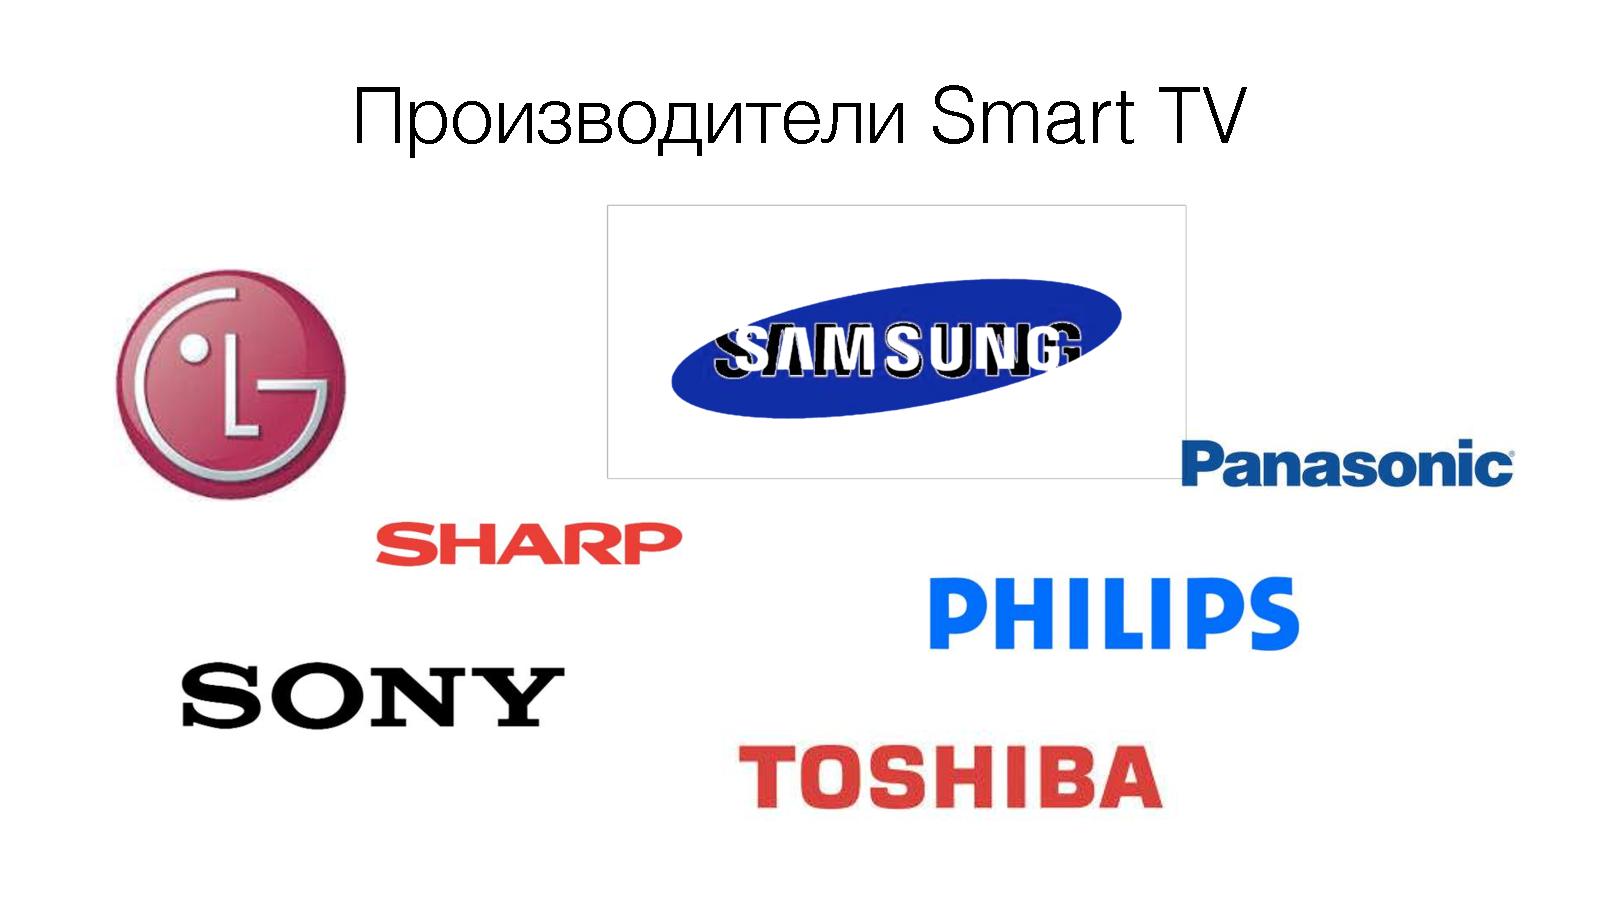 Файл:Как просить деньги через телевизор? (Екатерина Юлина, ProfsoUX-2014).pdf